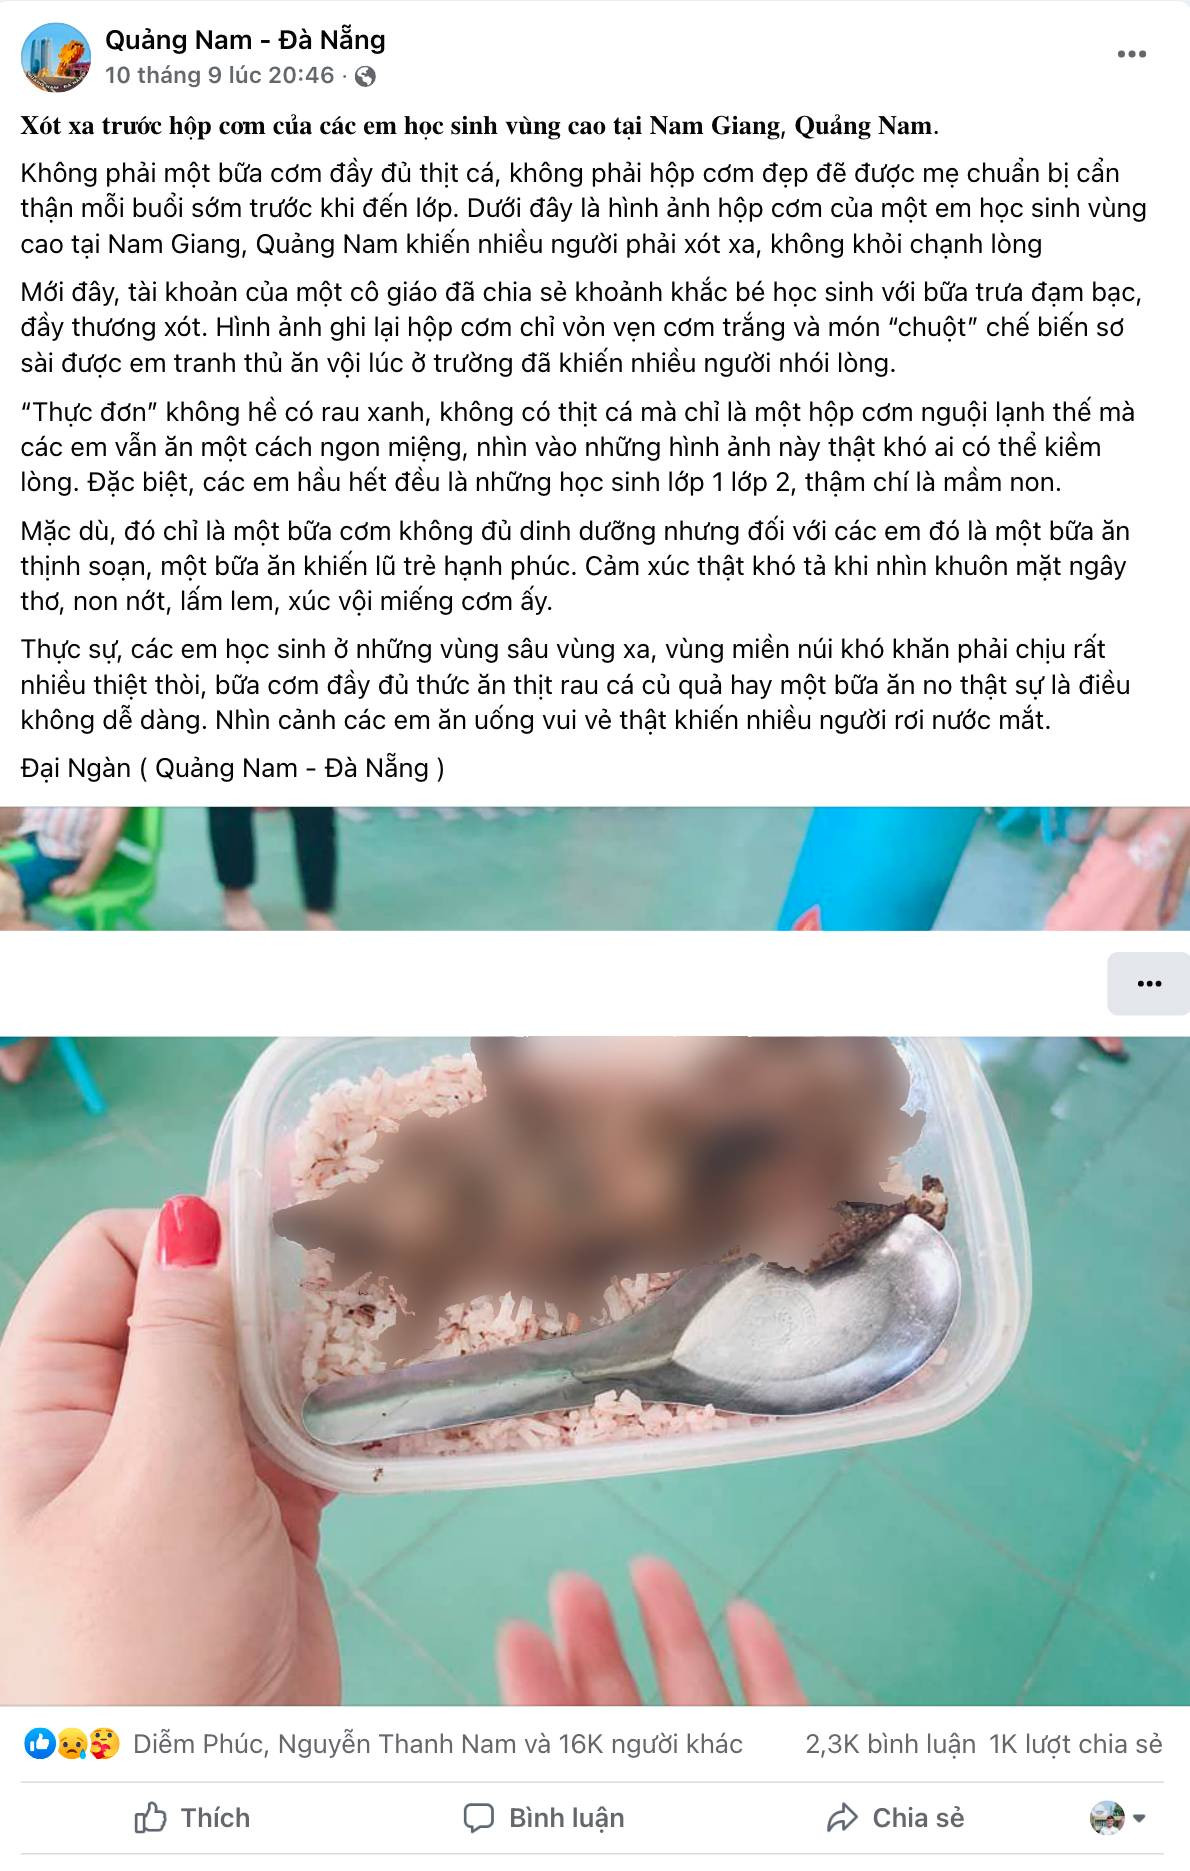 Xác minh được người đăng bức ảnh \'học sinh mang cơm với thịt chuột\'